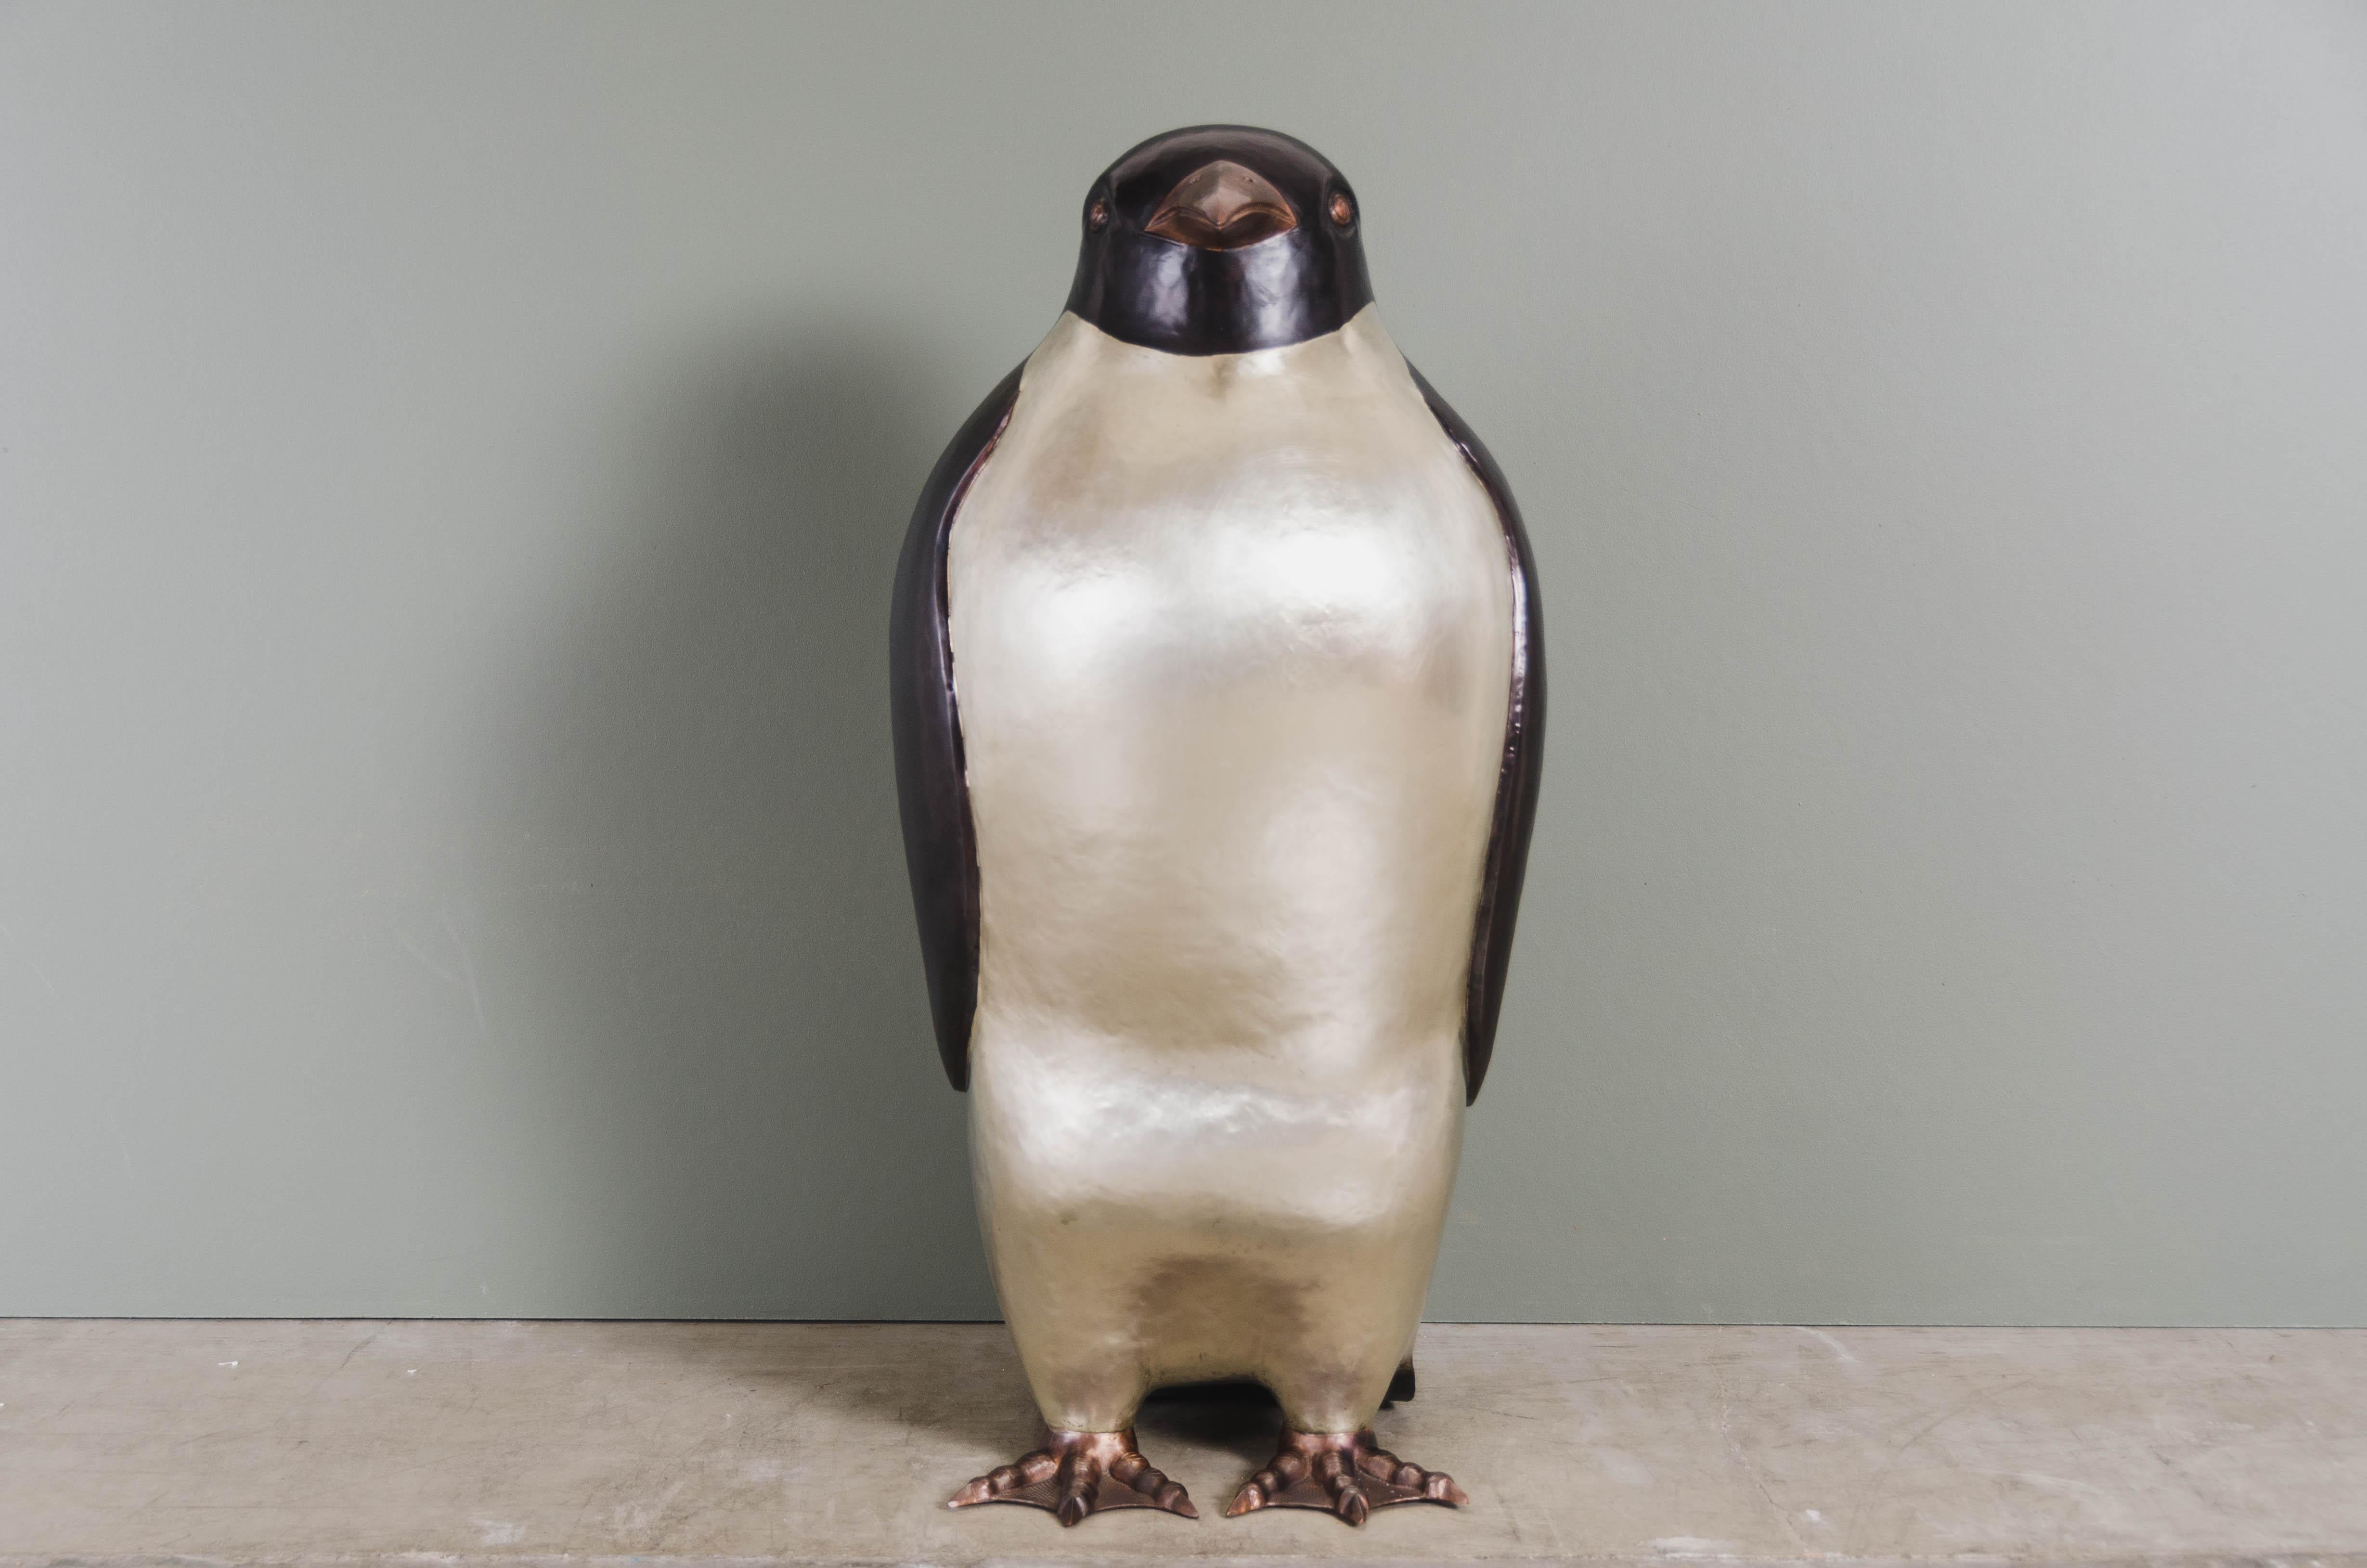 Sculpture de pingouin
Cuivre noir
Bronze blanc
Main repoussée
Edition limitée

Le repoussé est l'art traditionnel qui consiste à marteler à la main un relief décoratif sur une feuille de métal. La technique consiste à utiliser un marteau et